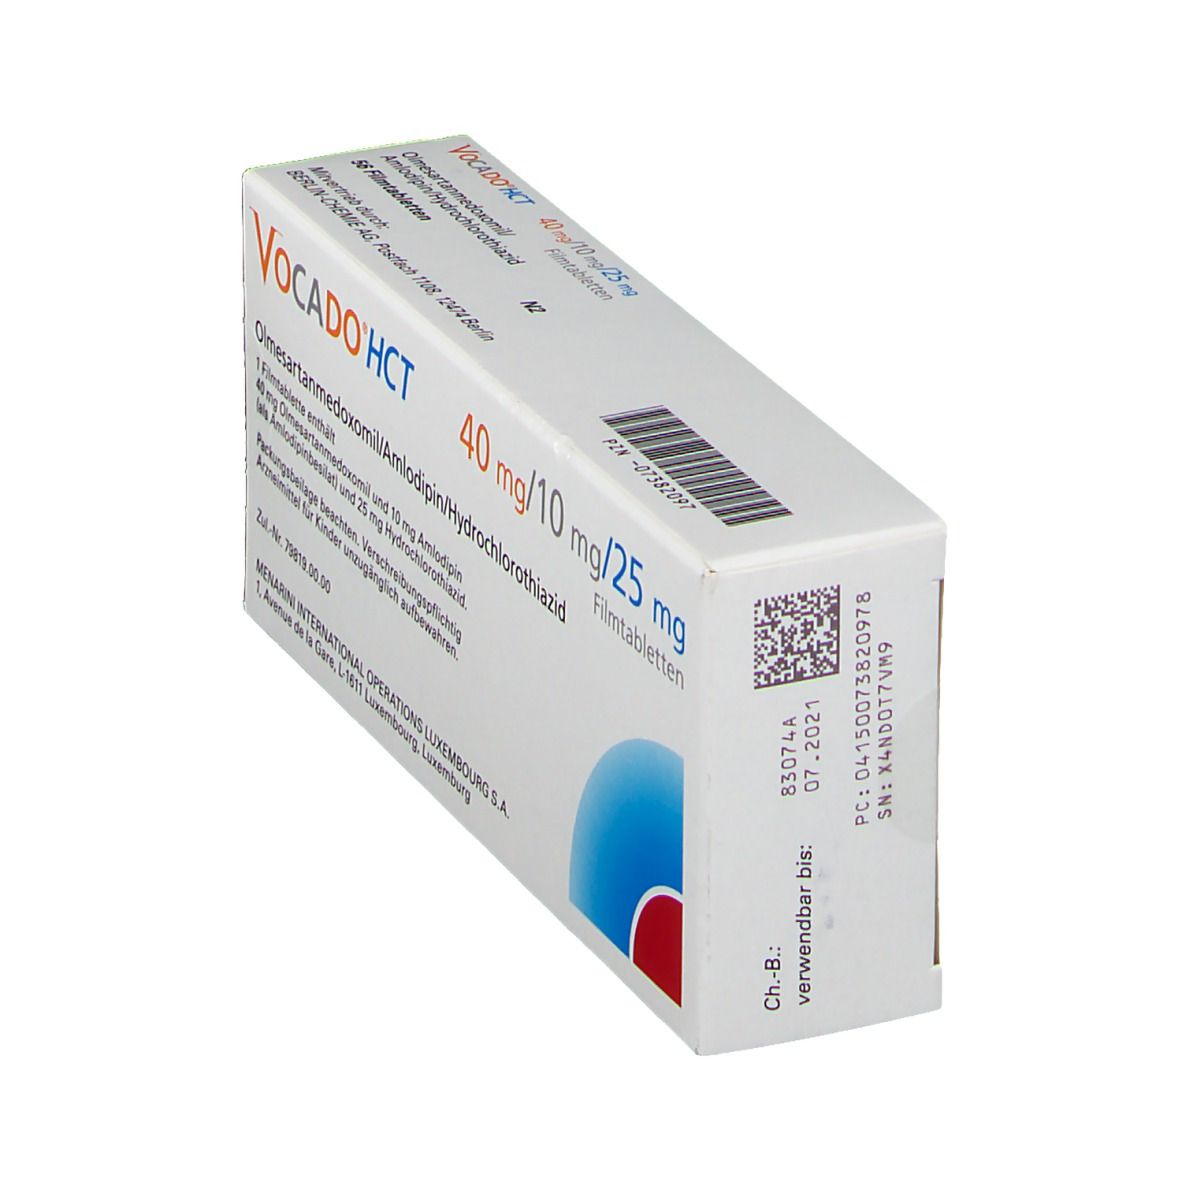 Vocado®HCT 40 mg/10 mg/25 mg